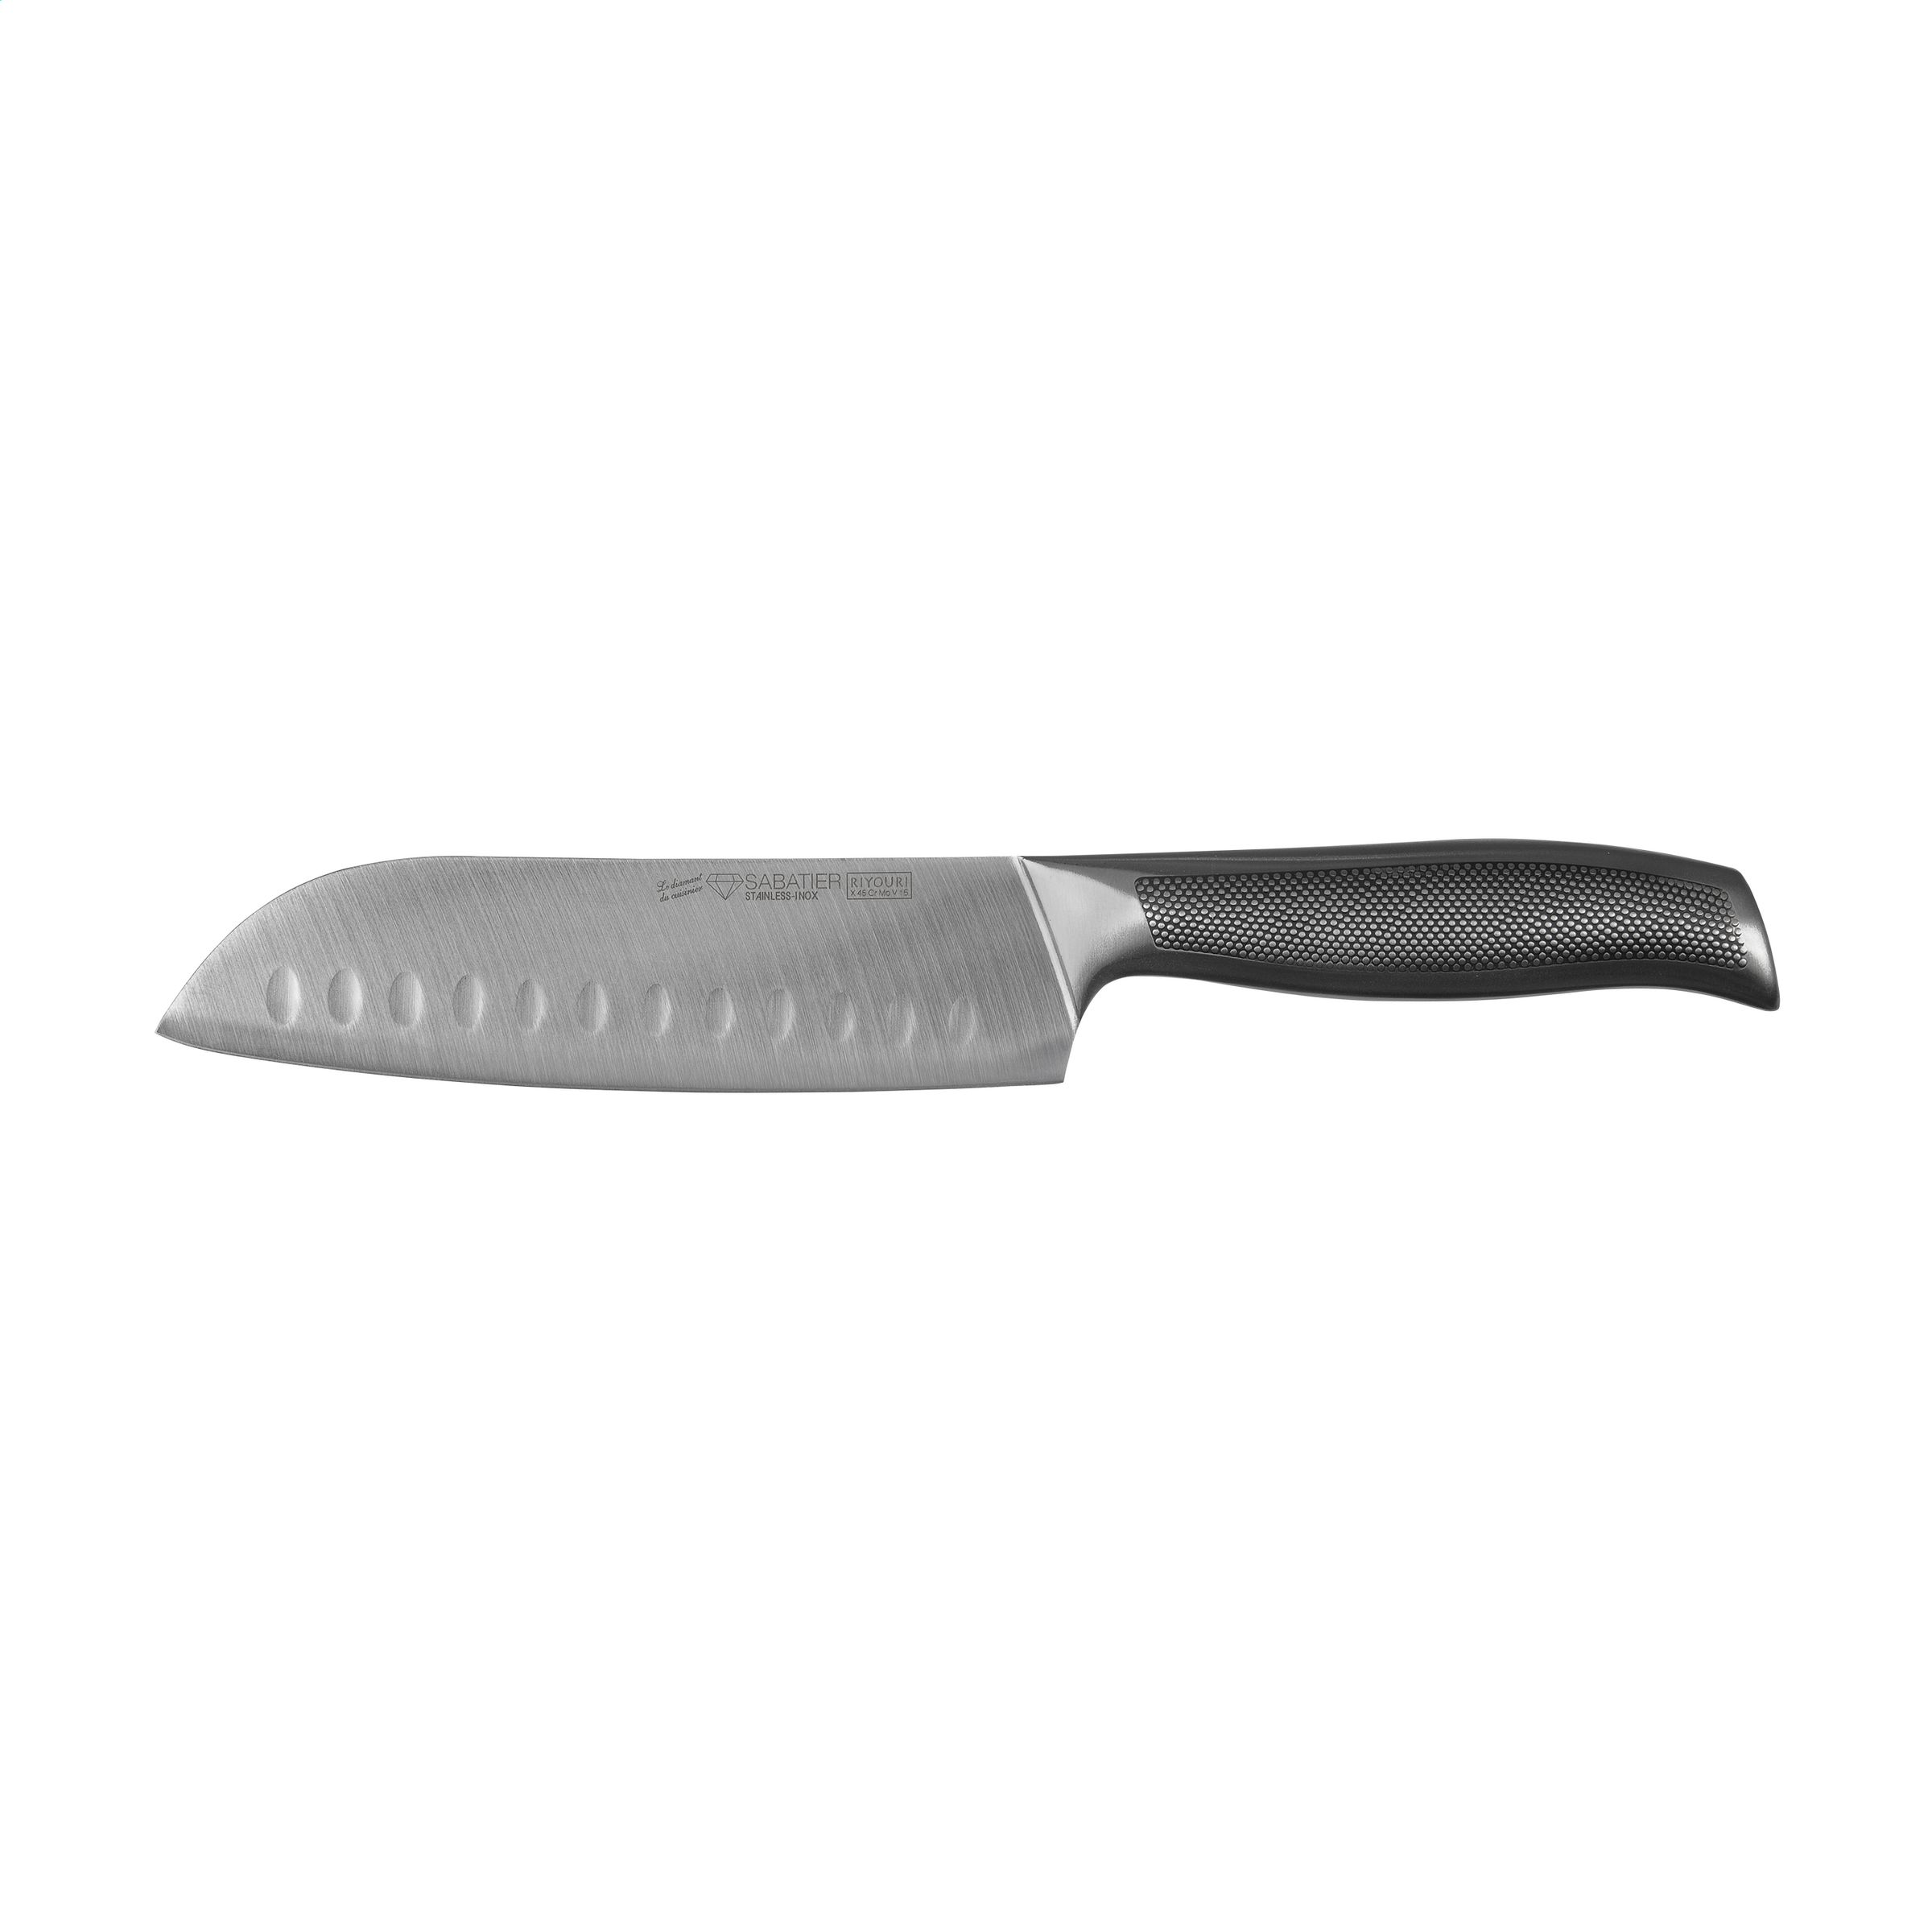 Couteau polyvalent asiatique avec une lame large de 17 cm - Juziers - Zaprinta Belgique